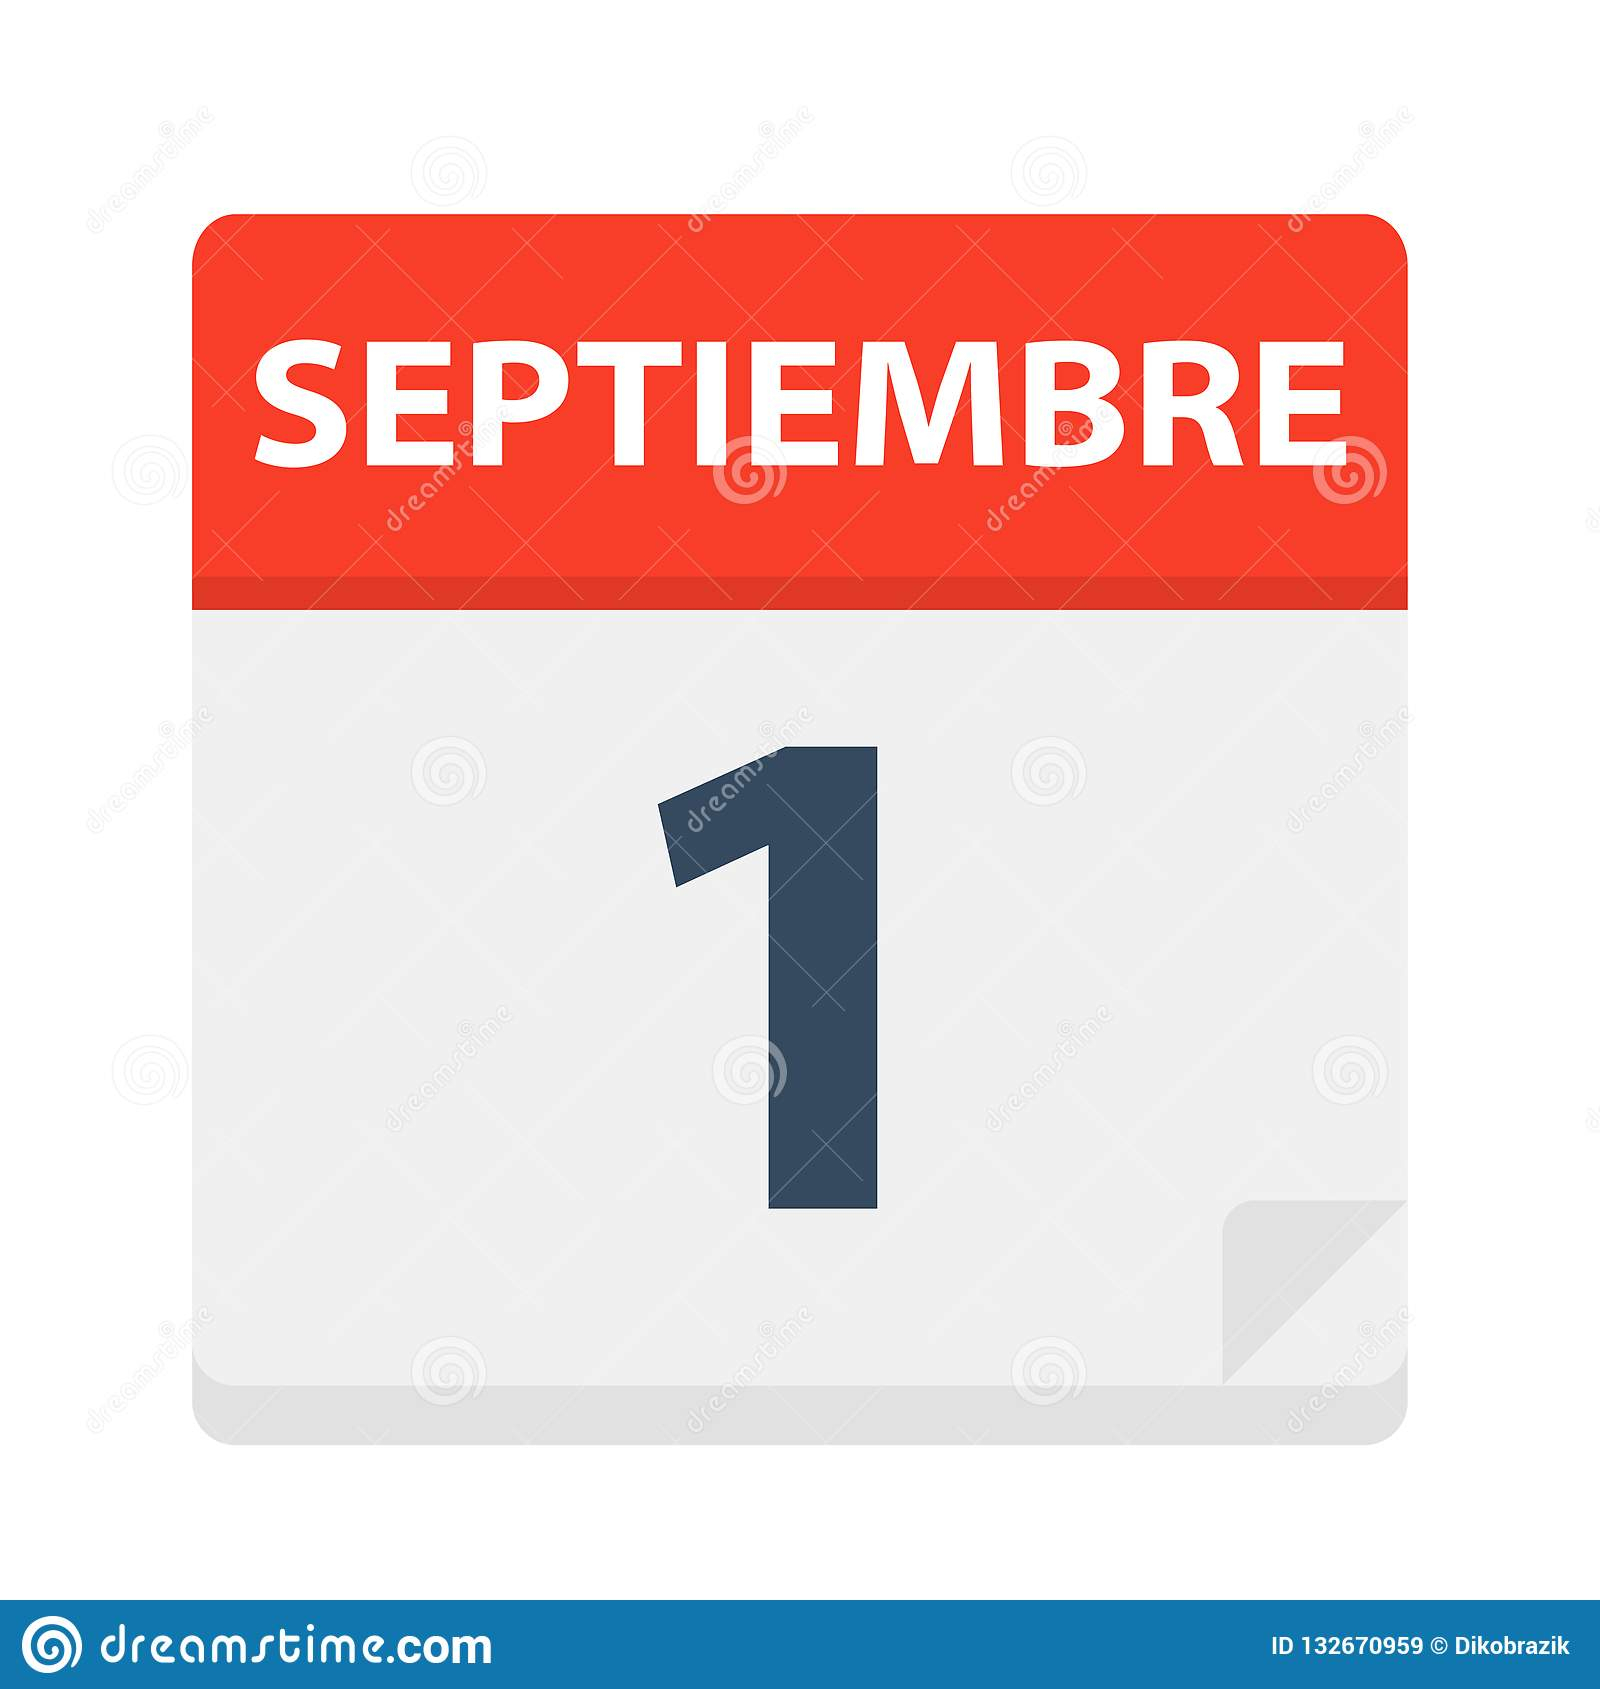 Septiembre 1 - Calendar Icon - September 1. Vector